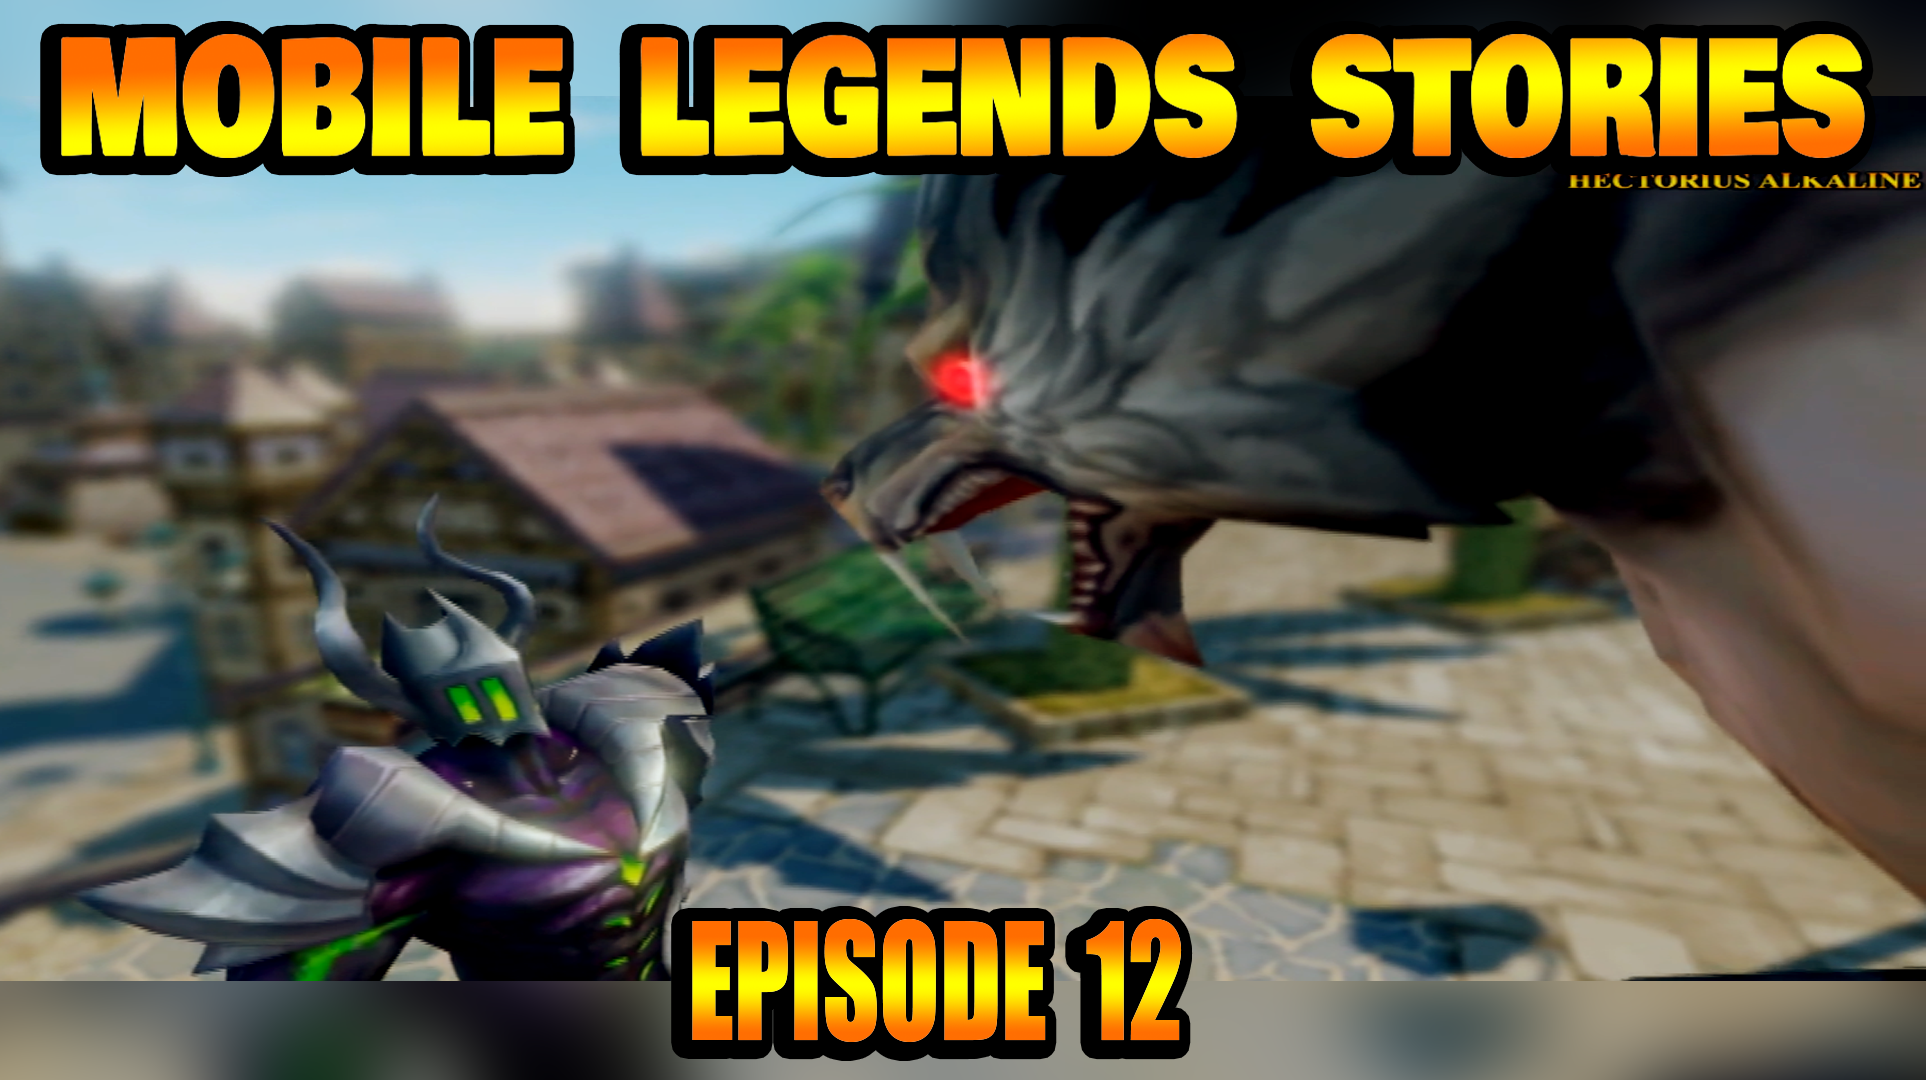 Mobile Legends Stories Episode 12